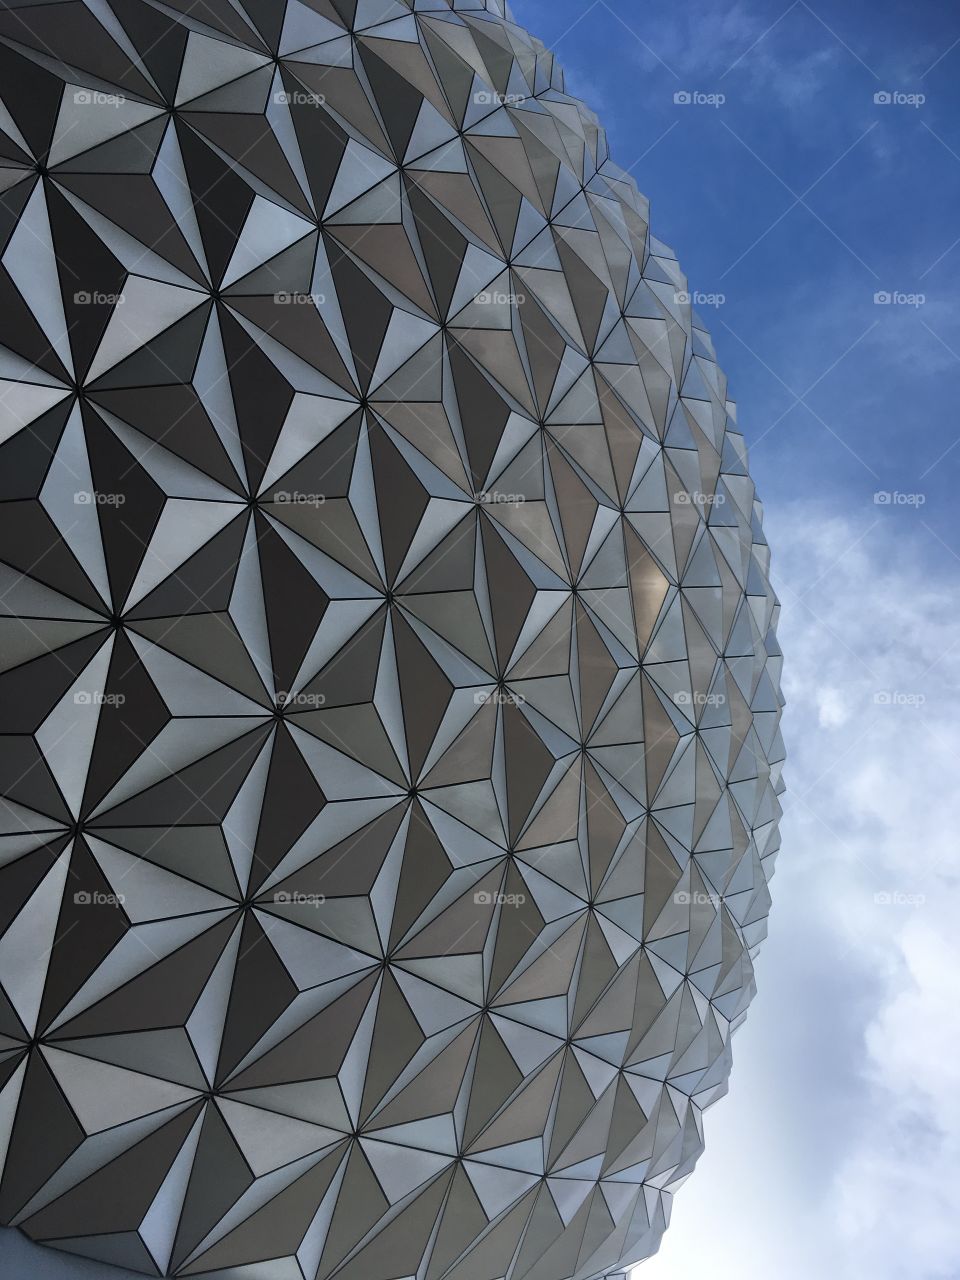 Epcot Ball at Disney World in Orlando, Florida